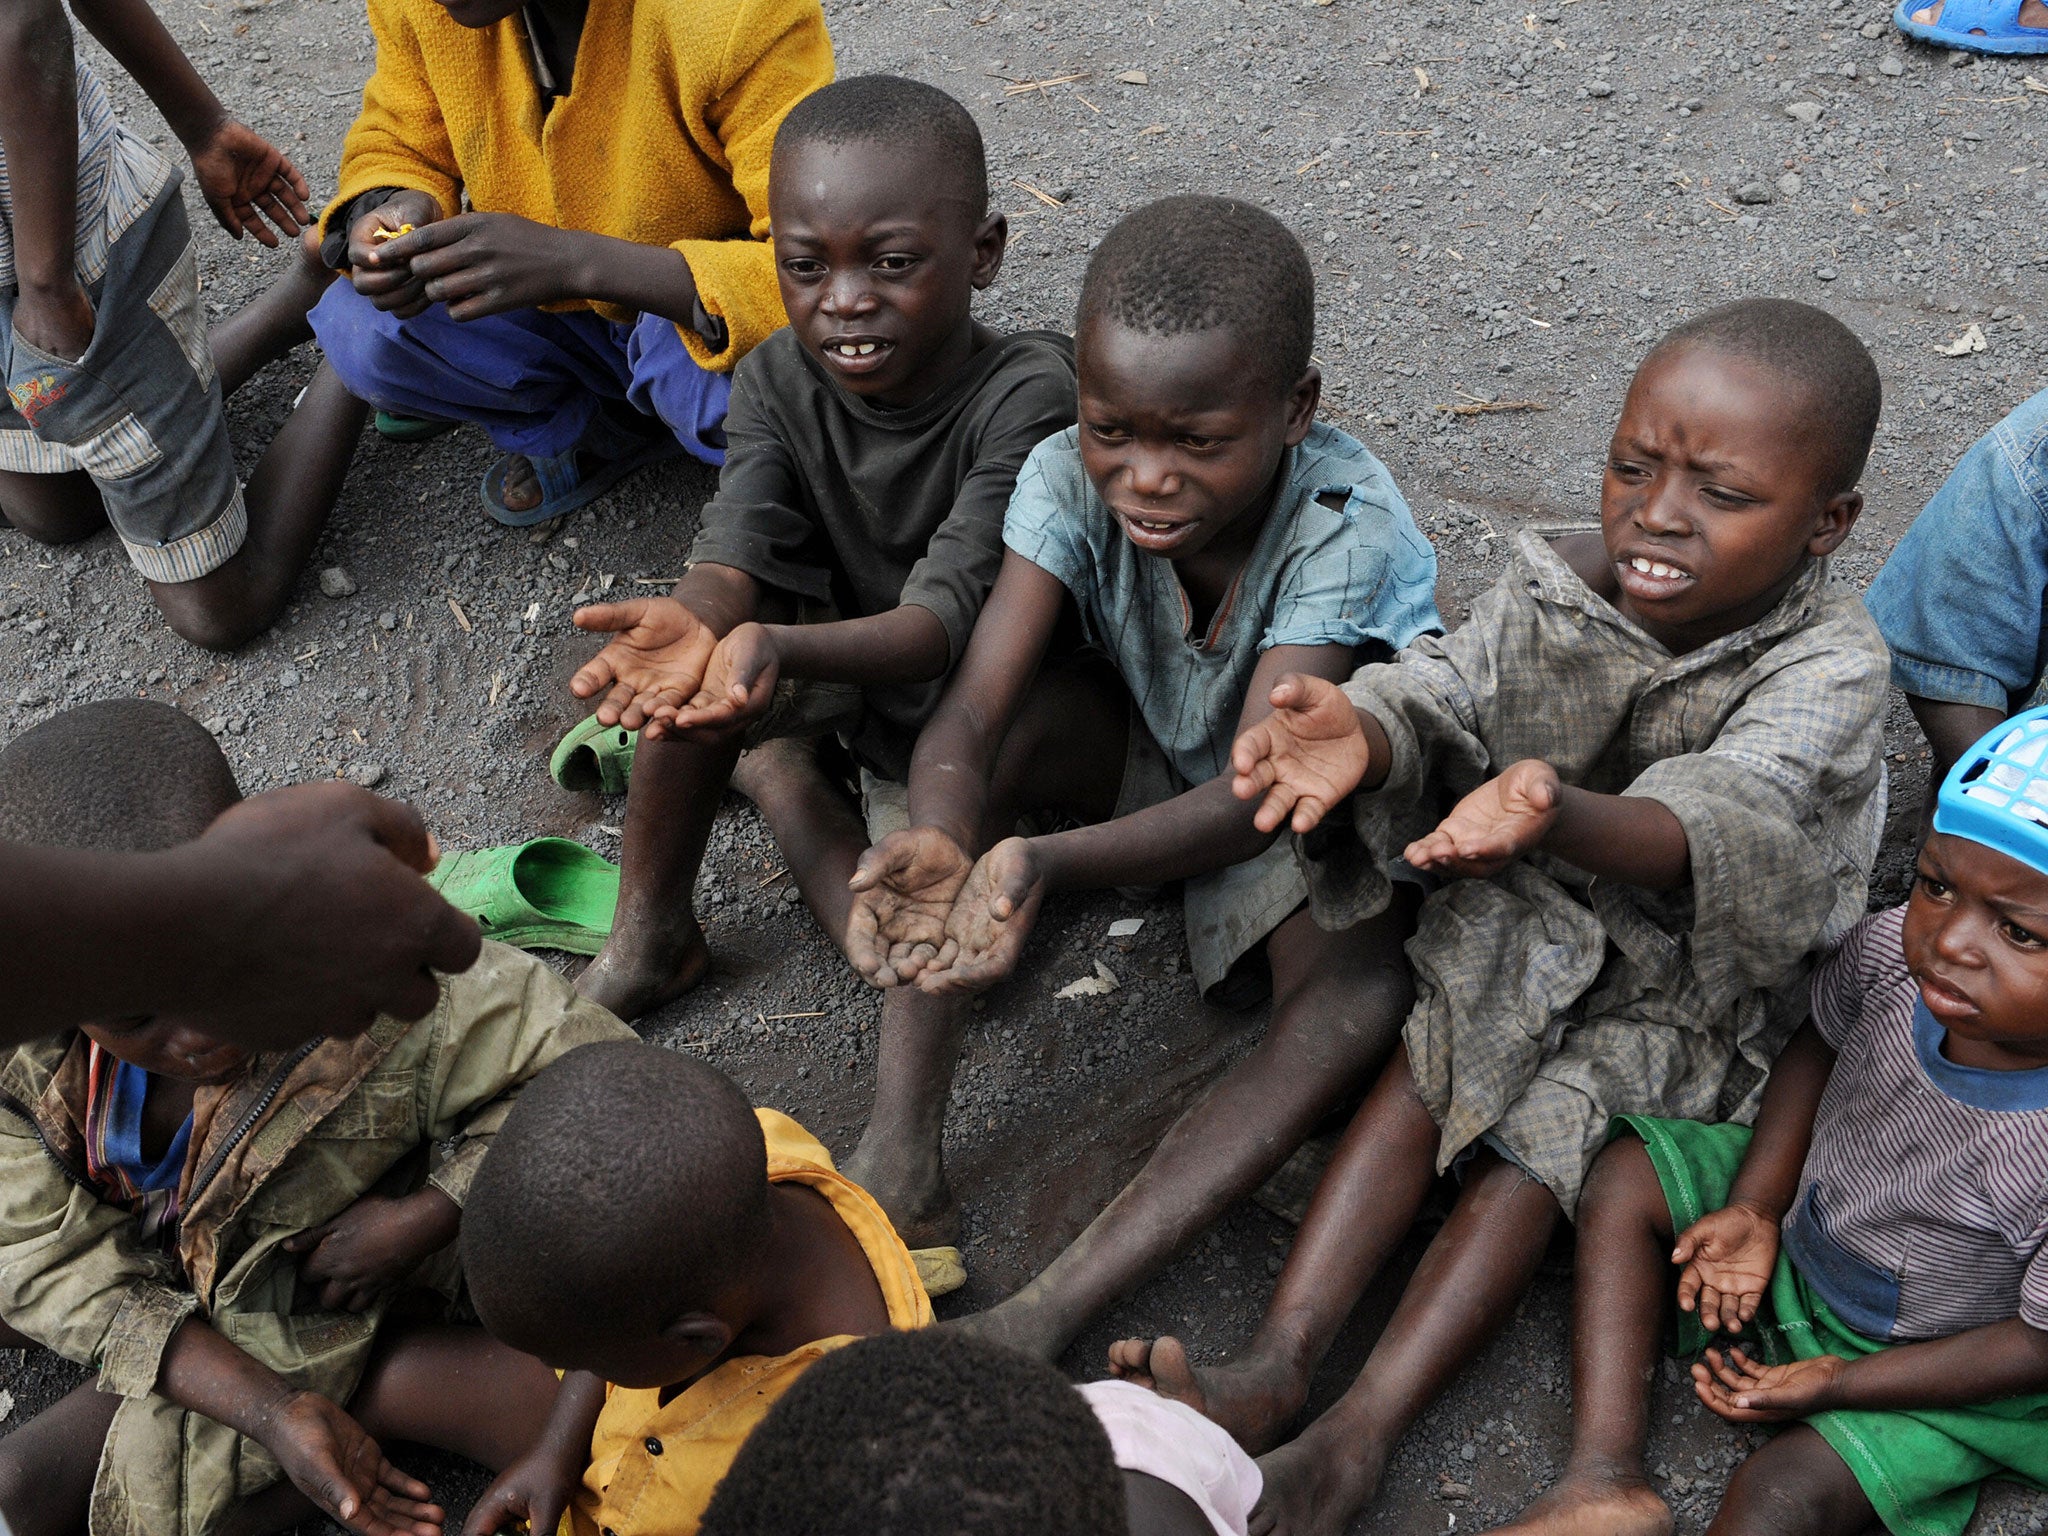 Starving help. Бедные дети в Африке голодающие. Голодающие дети пфрика. Бедные африканские дети.